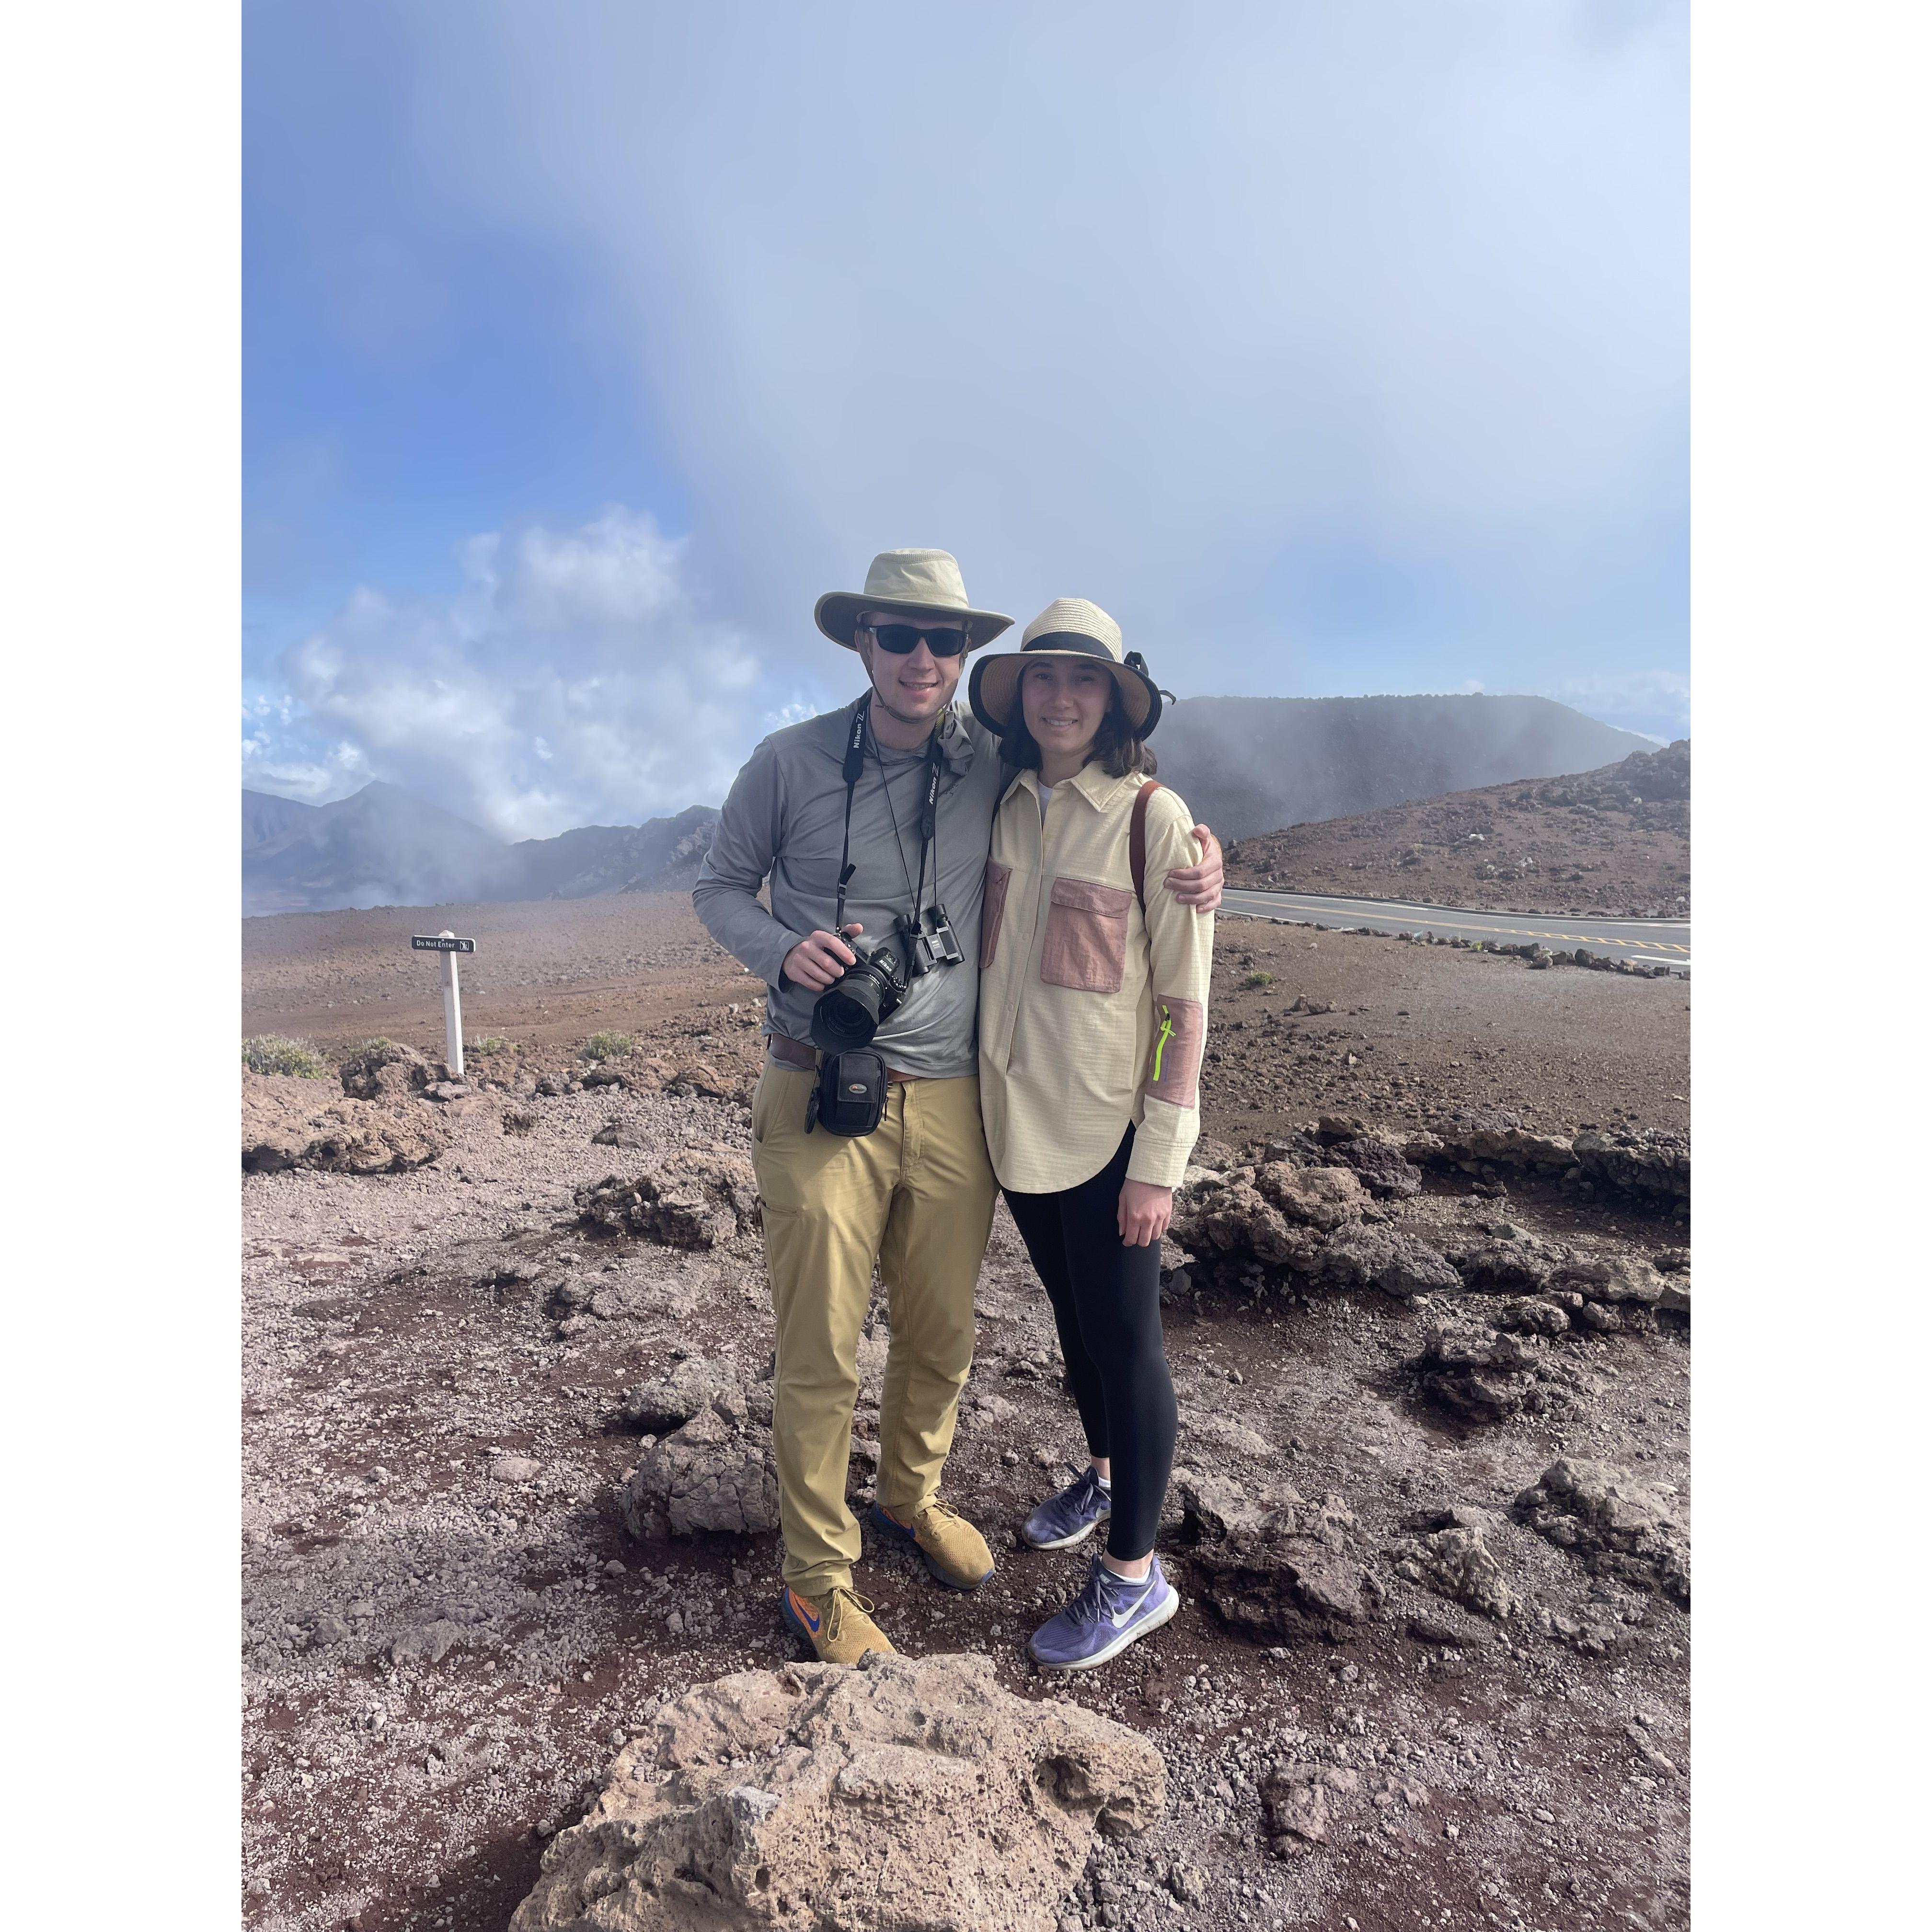 Maui trip - hiking Haleakala